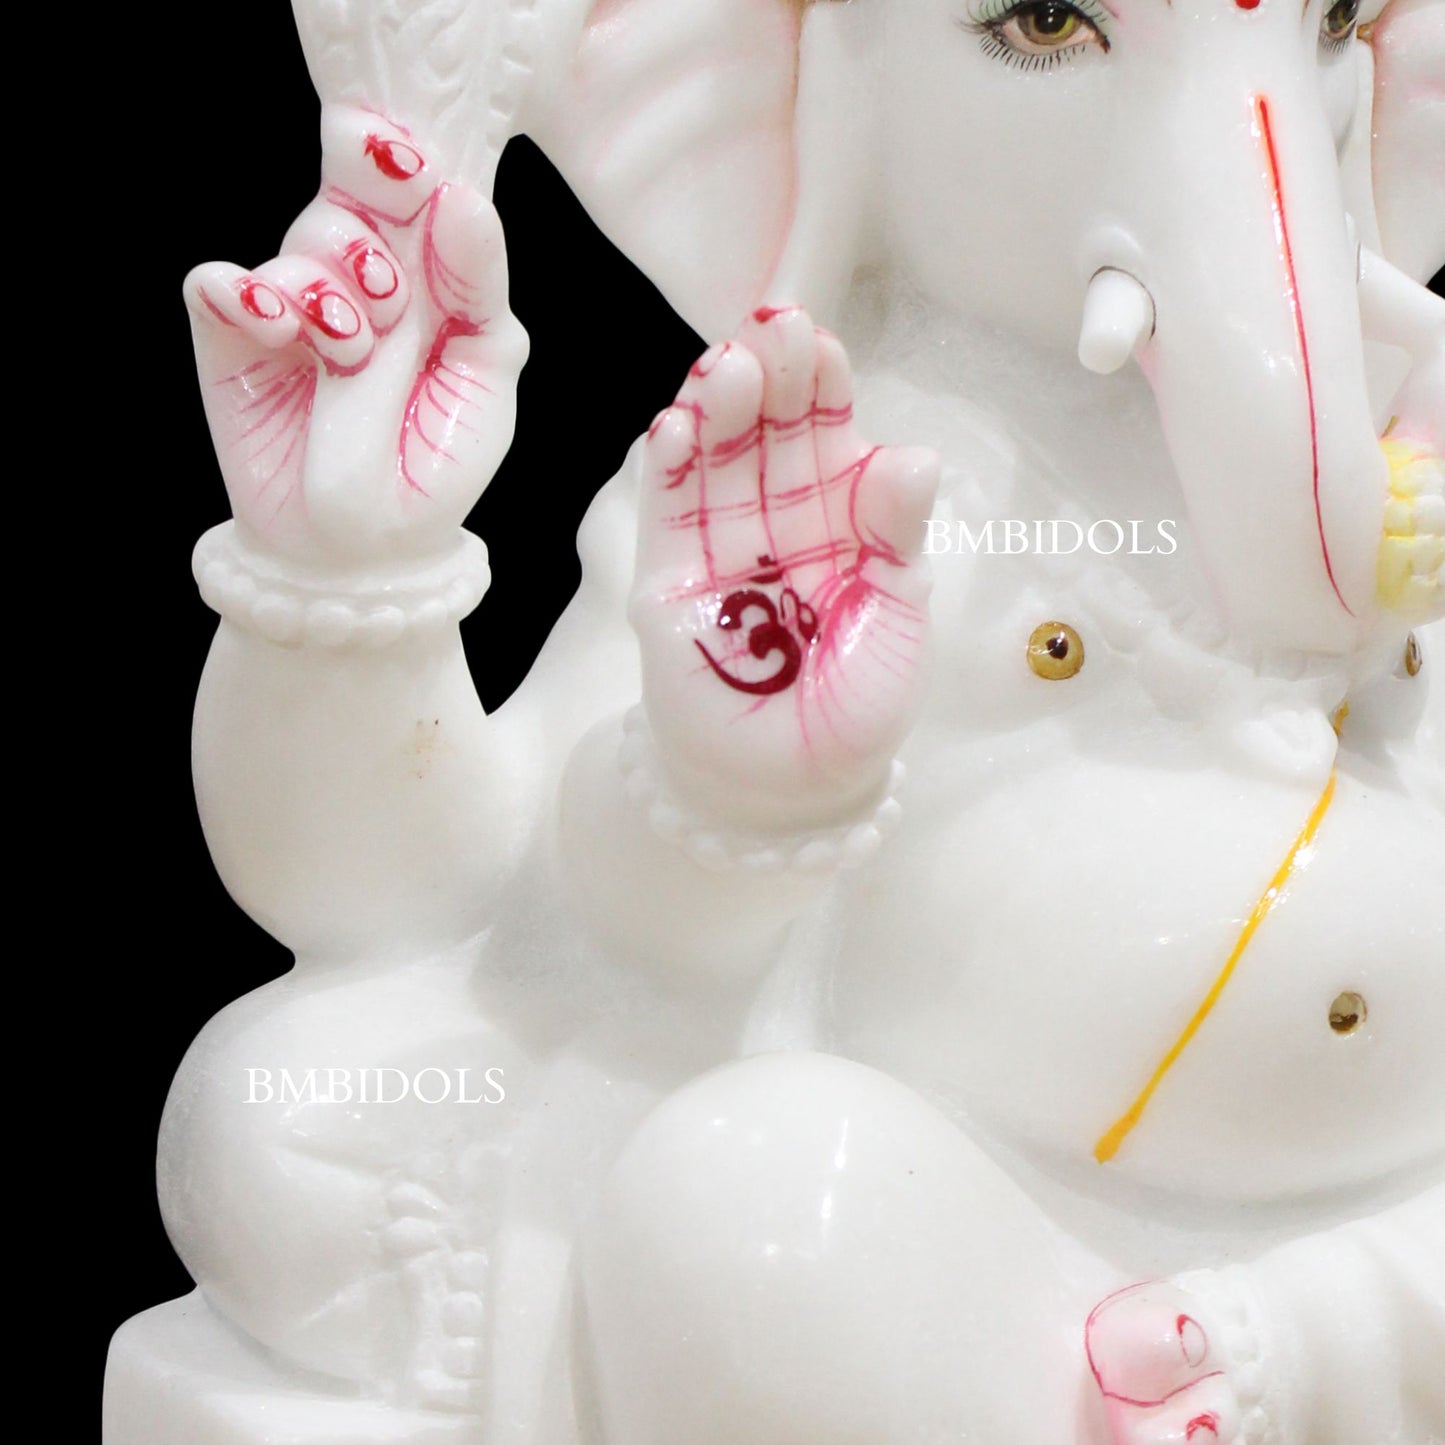 White Makrana Marble Ganesha Murti in 15inches